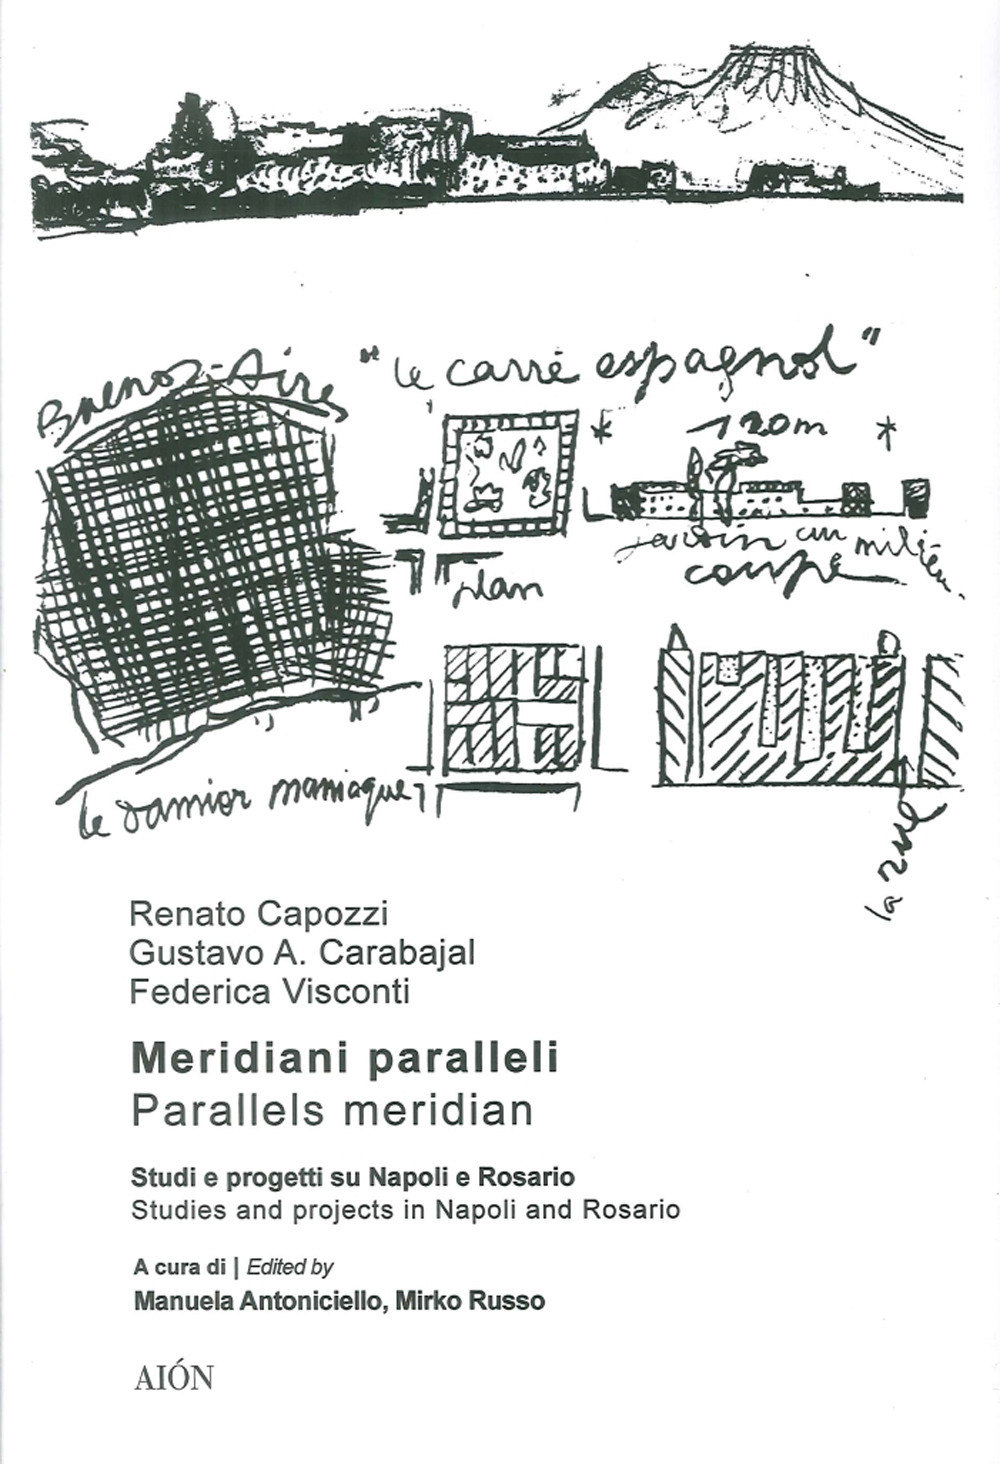 Meridiani paralleli. Studi e progetti su Napoli e Rosario-Parallel meridians. Studies and projects in Naples and Rosario